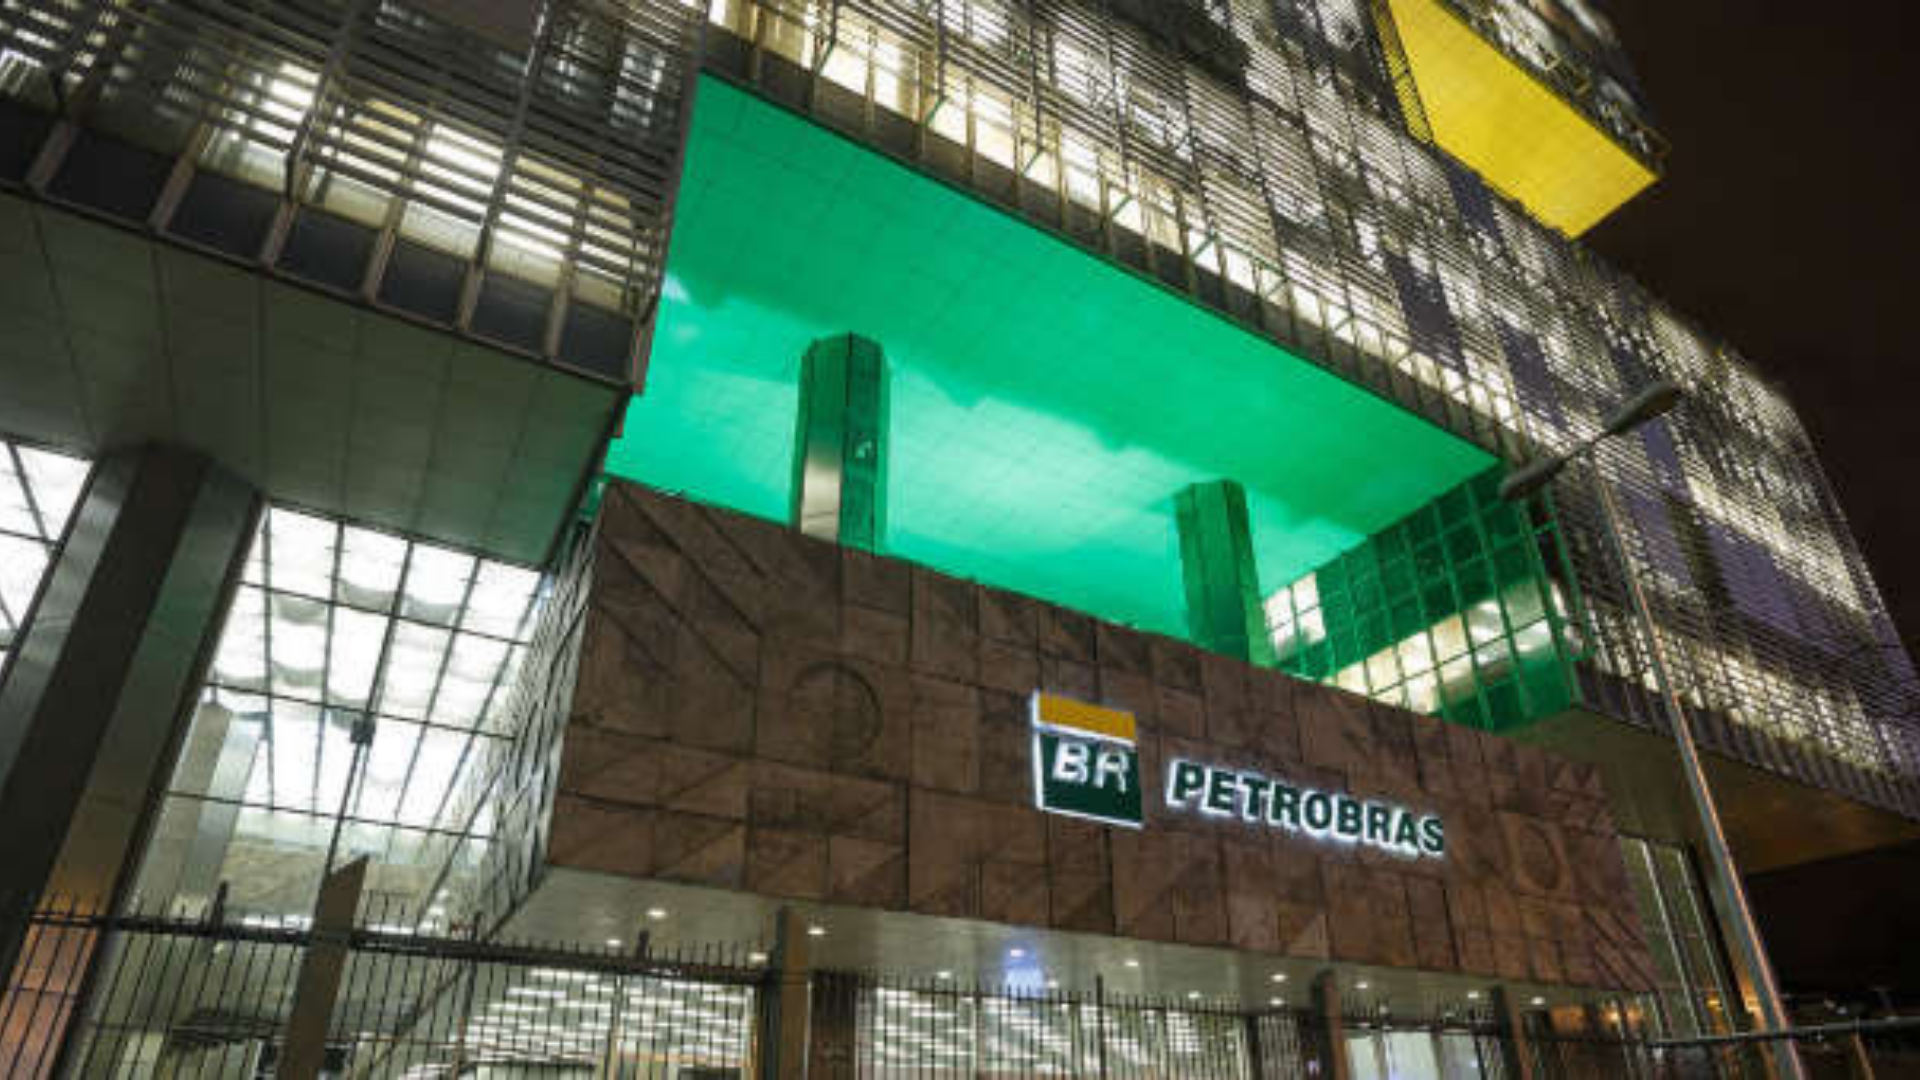 Petrobras – petroquímica – Braskem